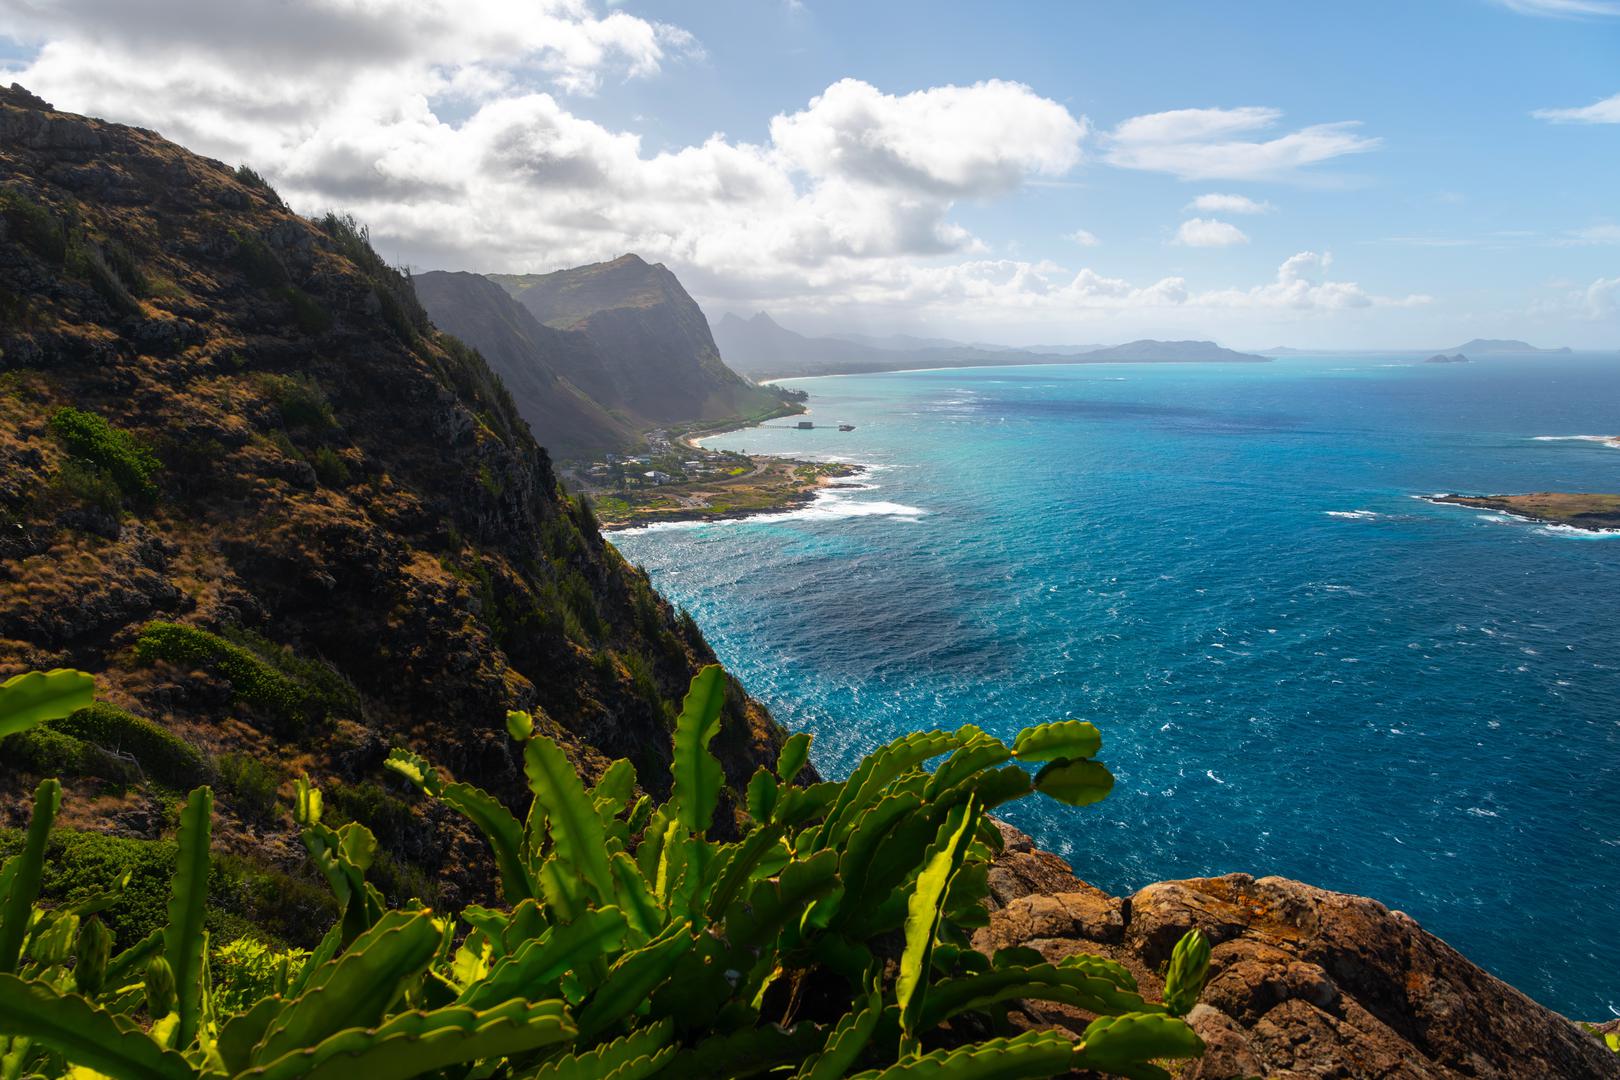 Havaji: Kako bi sačuvala svoje koraljne grebene, država Havaji je 1. siječnja 2021. zabranila kreme za sunčanje s oksibenzonom i oktinoksatom. Ovaj se zakon odnosi na sve komercijalne trgovine koje prodaju kreme za sunčanje na Havajima. Turisti koji putuju na Havaje trebali bi kupiti mineralne kreme za sunčanje kako bi se pridržavali zabrane. 